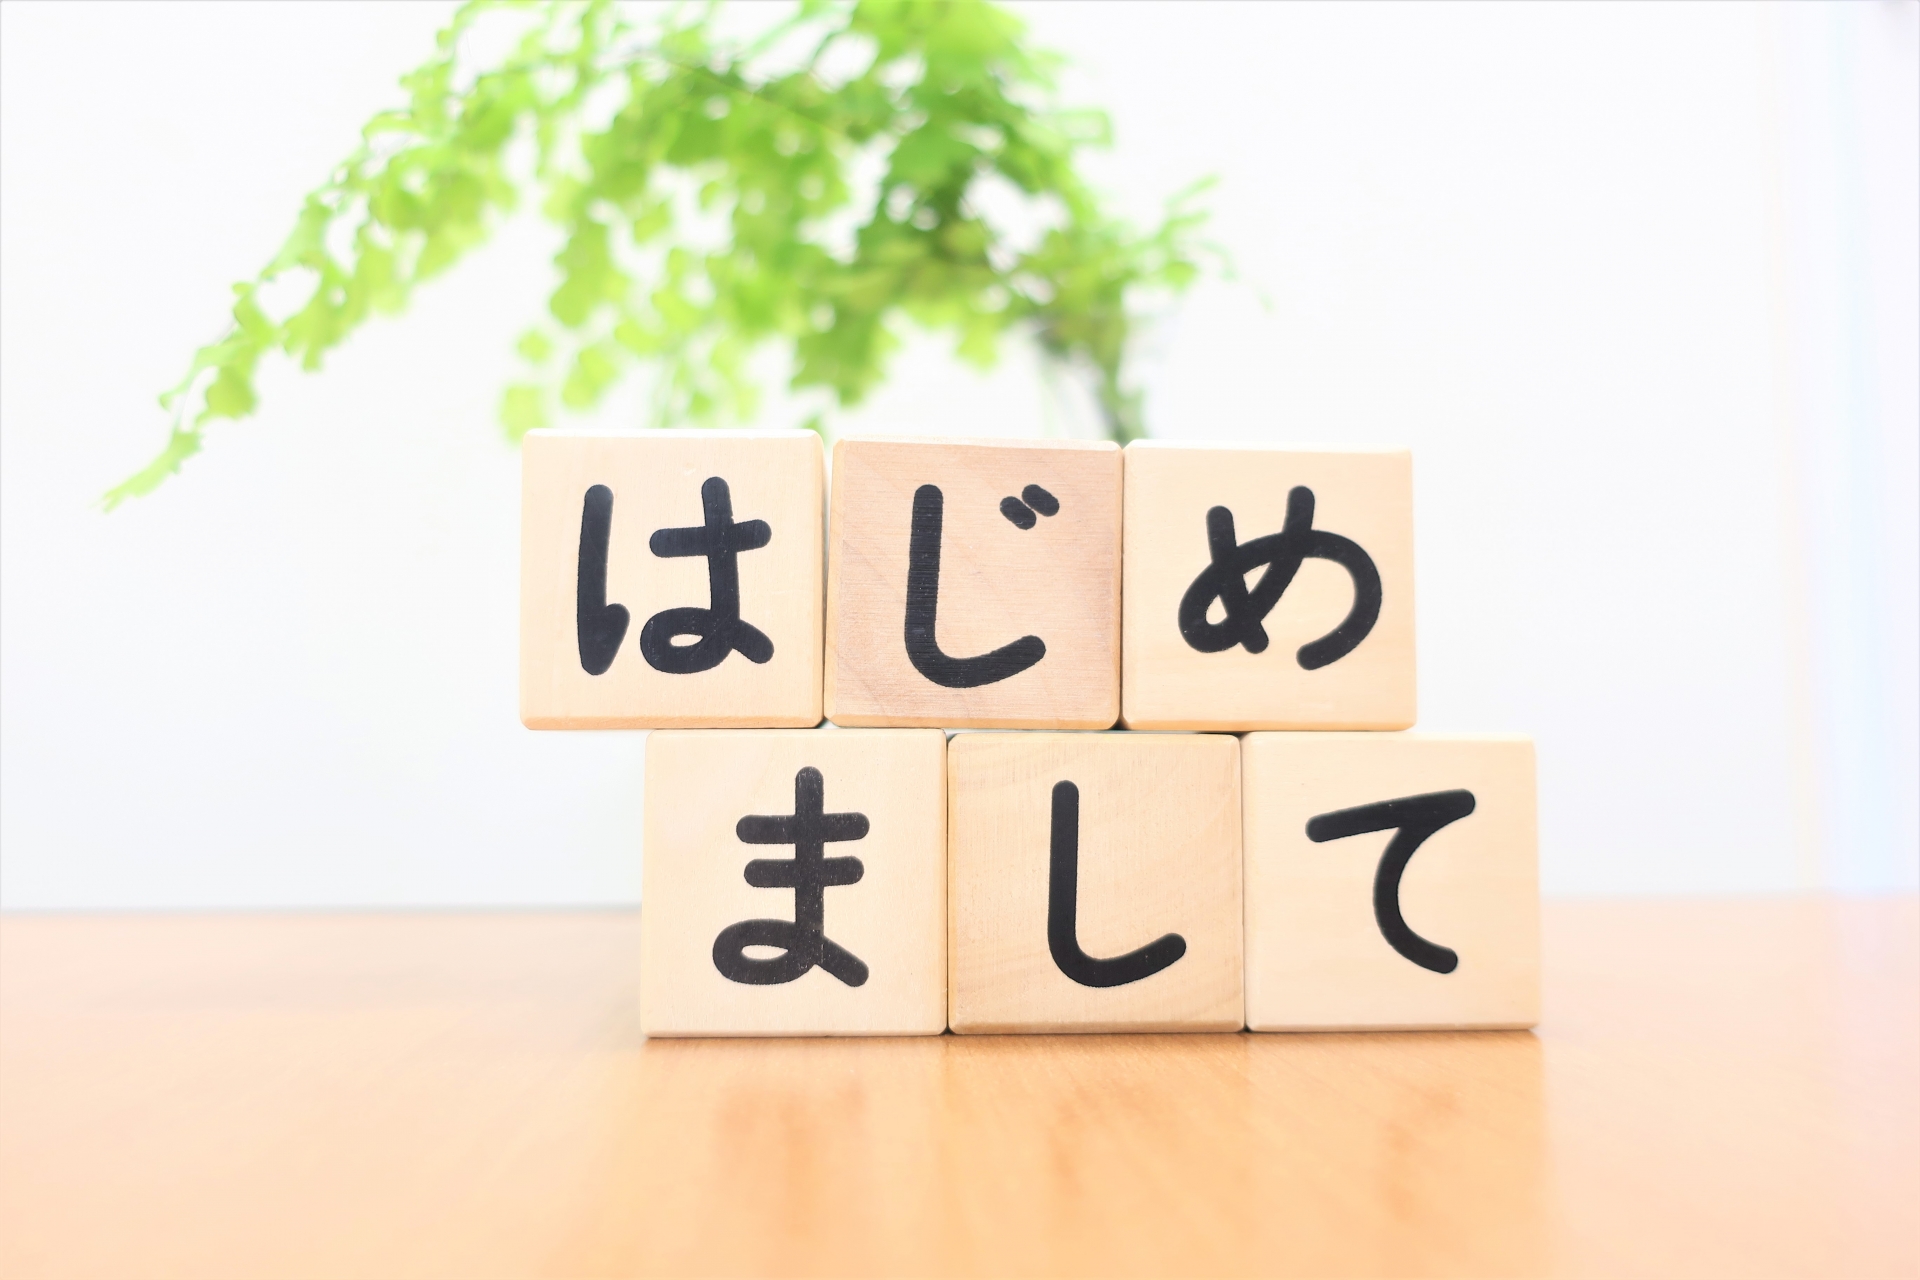 漢字 を使い過ぎてはいけない ひらがな とのバランスを考えよう Uxライター 方山敏彦のブログ